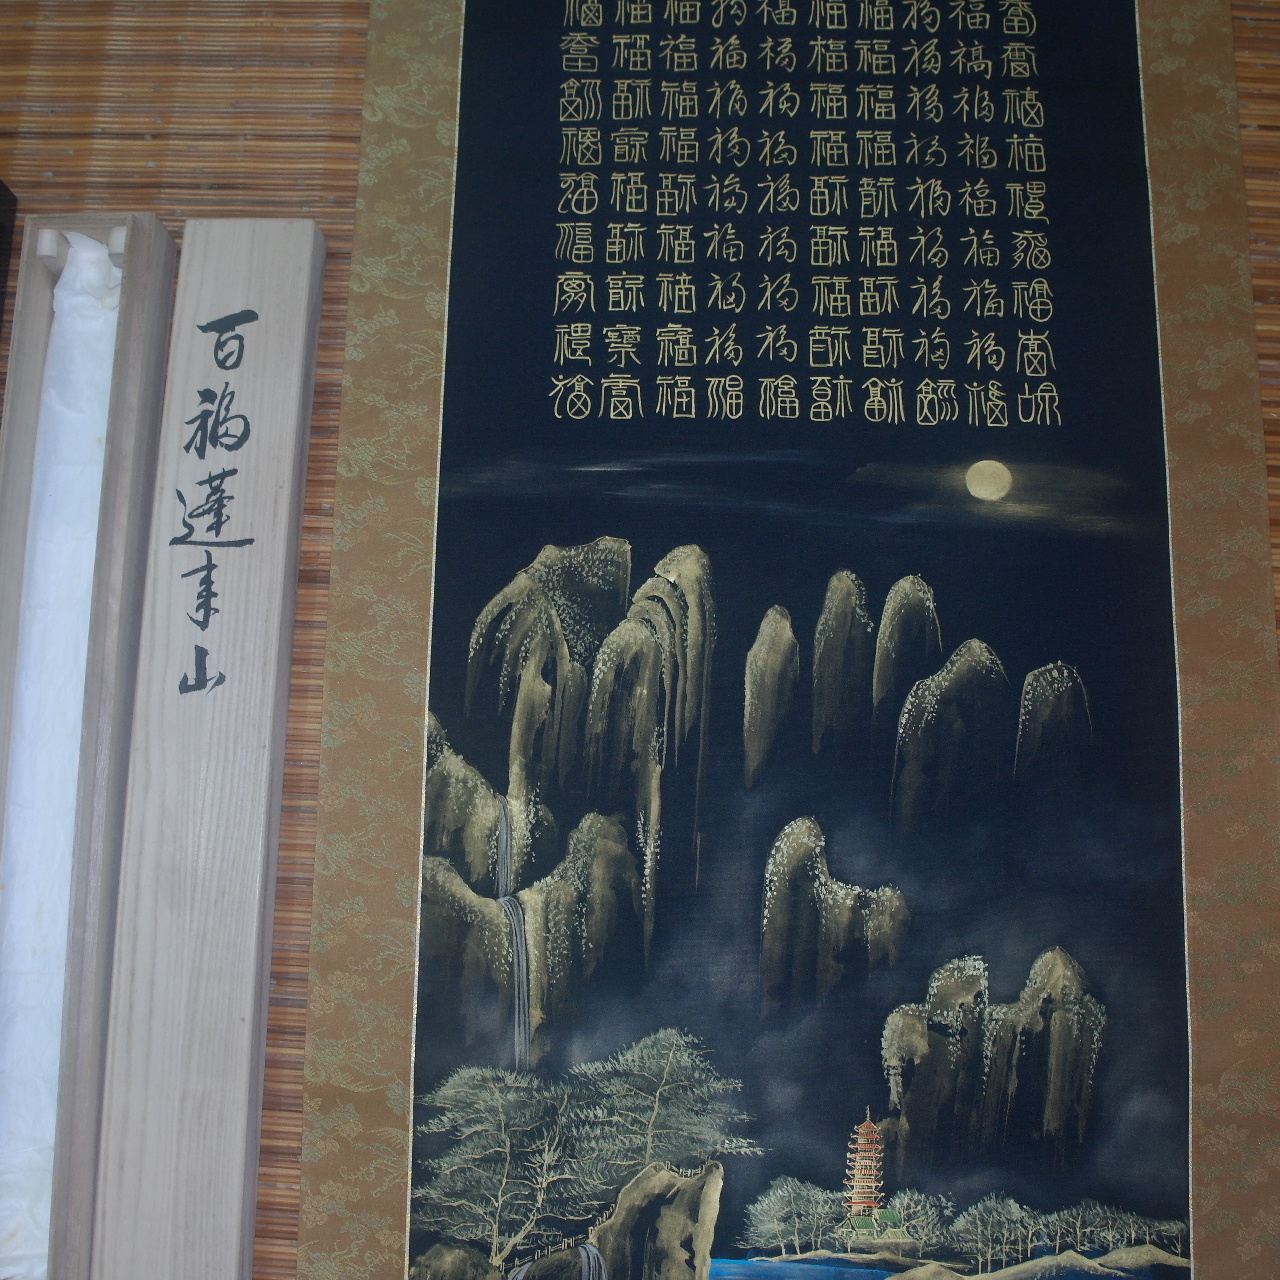 43-백복연사산 베바닥에 금분 그림 족자